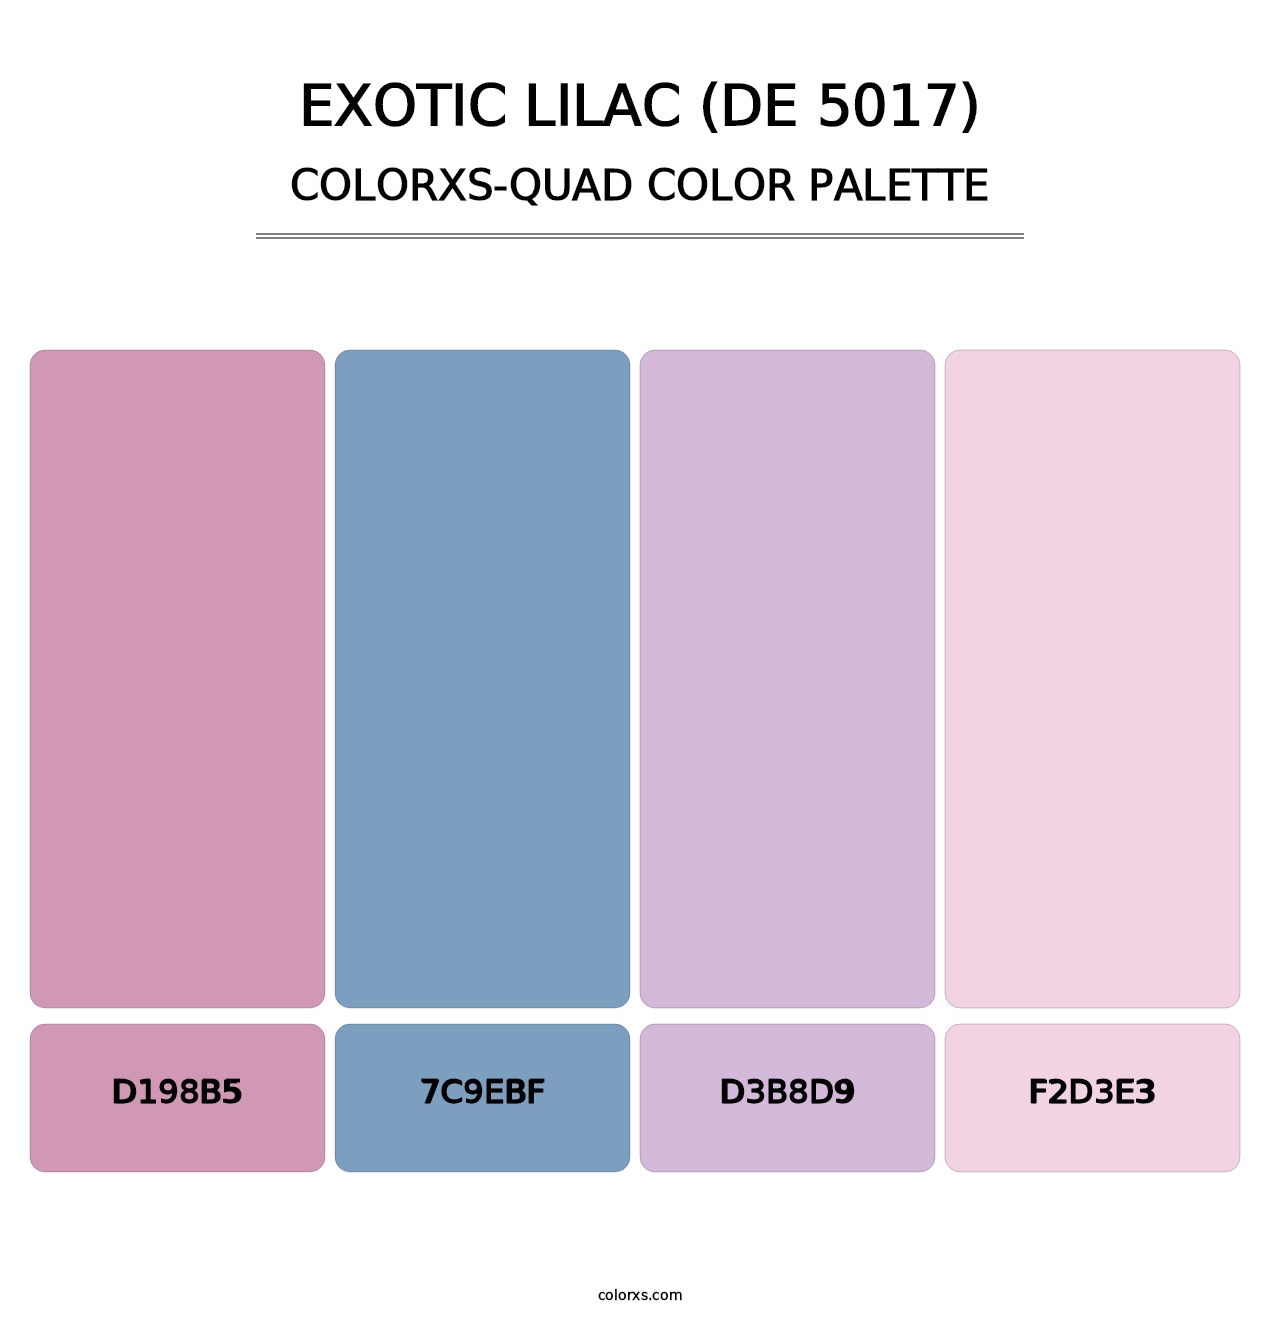 Exotic Lilac (DE 5017) - Colorxs Quad Palette